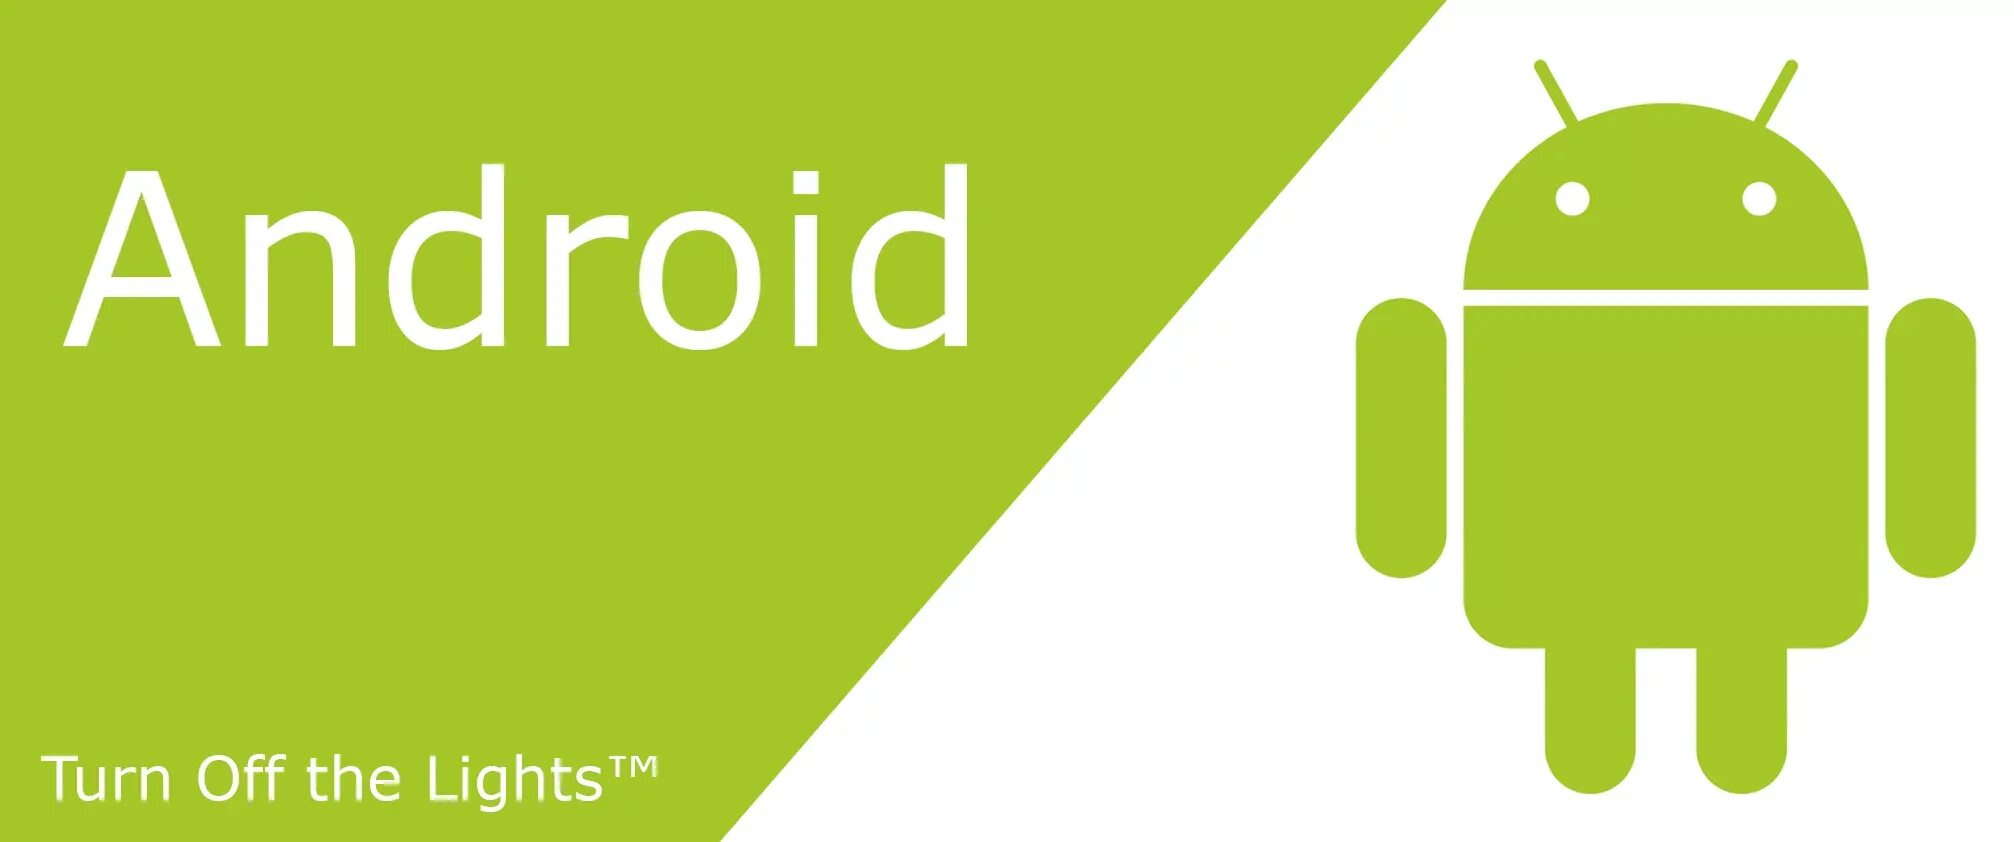 Включи андроид 10. Логотип андроид. Логотип андроид 5.0. Savefrom логотип. Turn off Android.